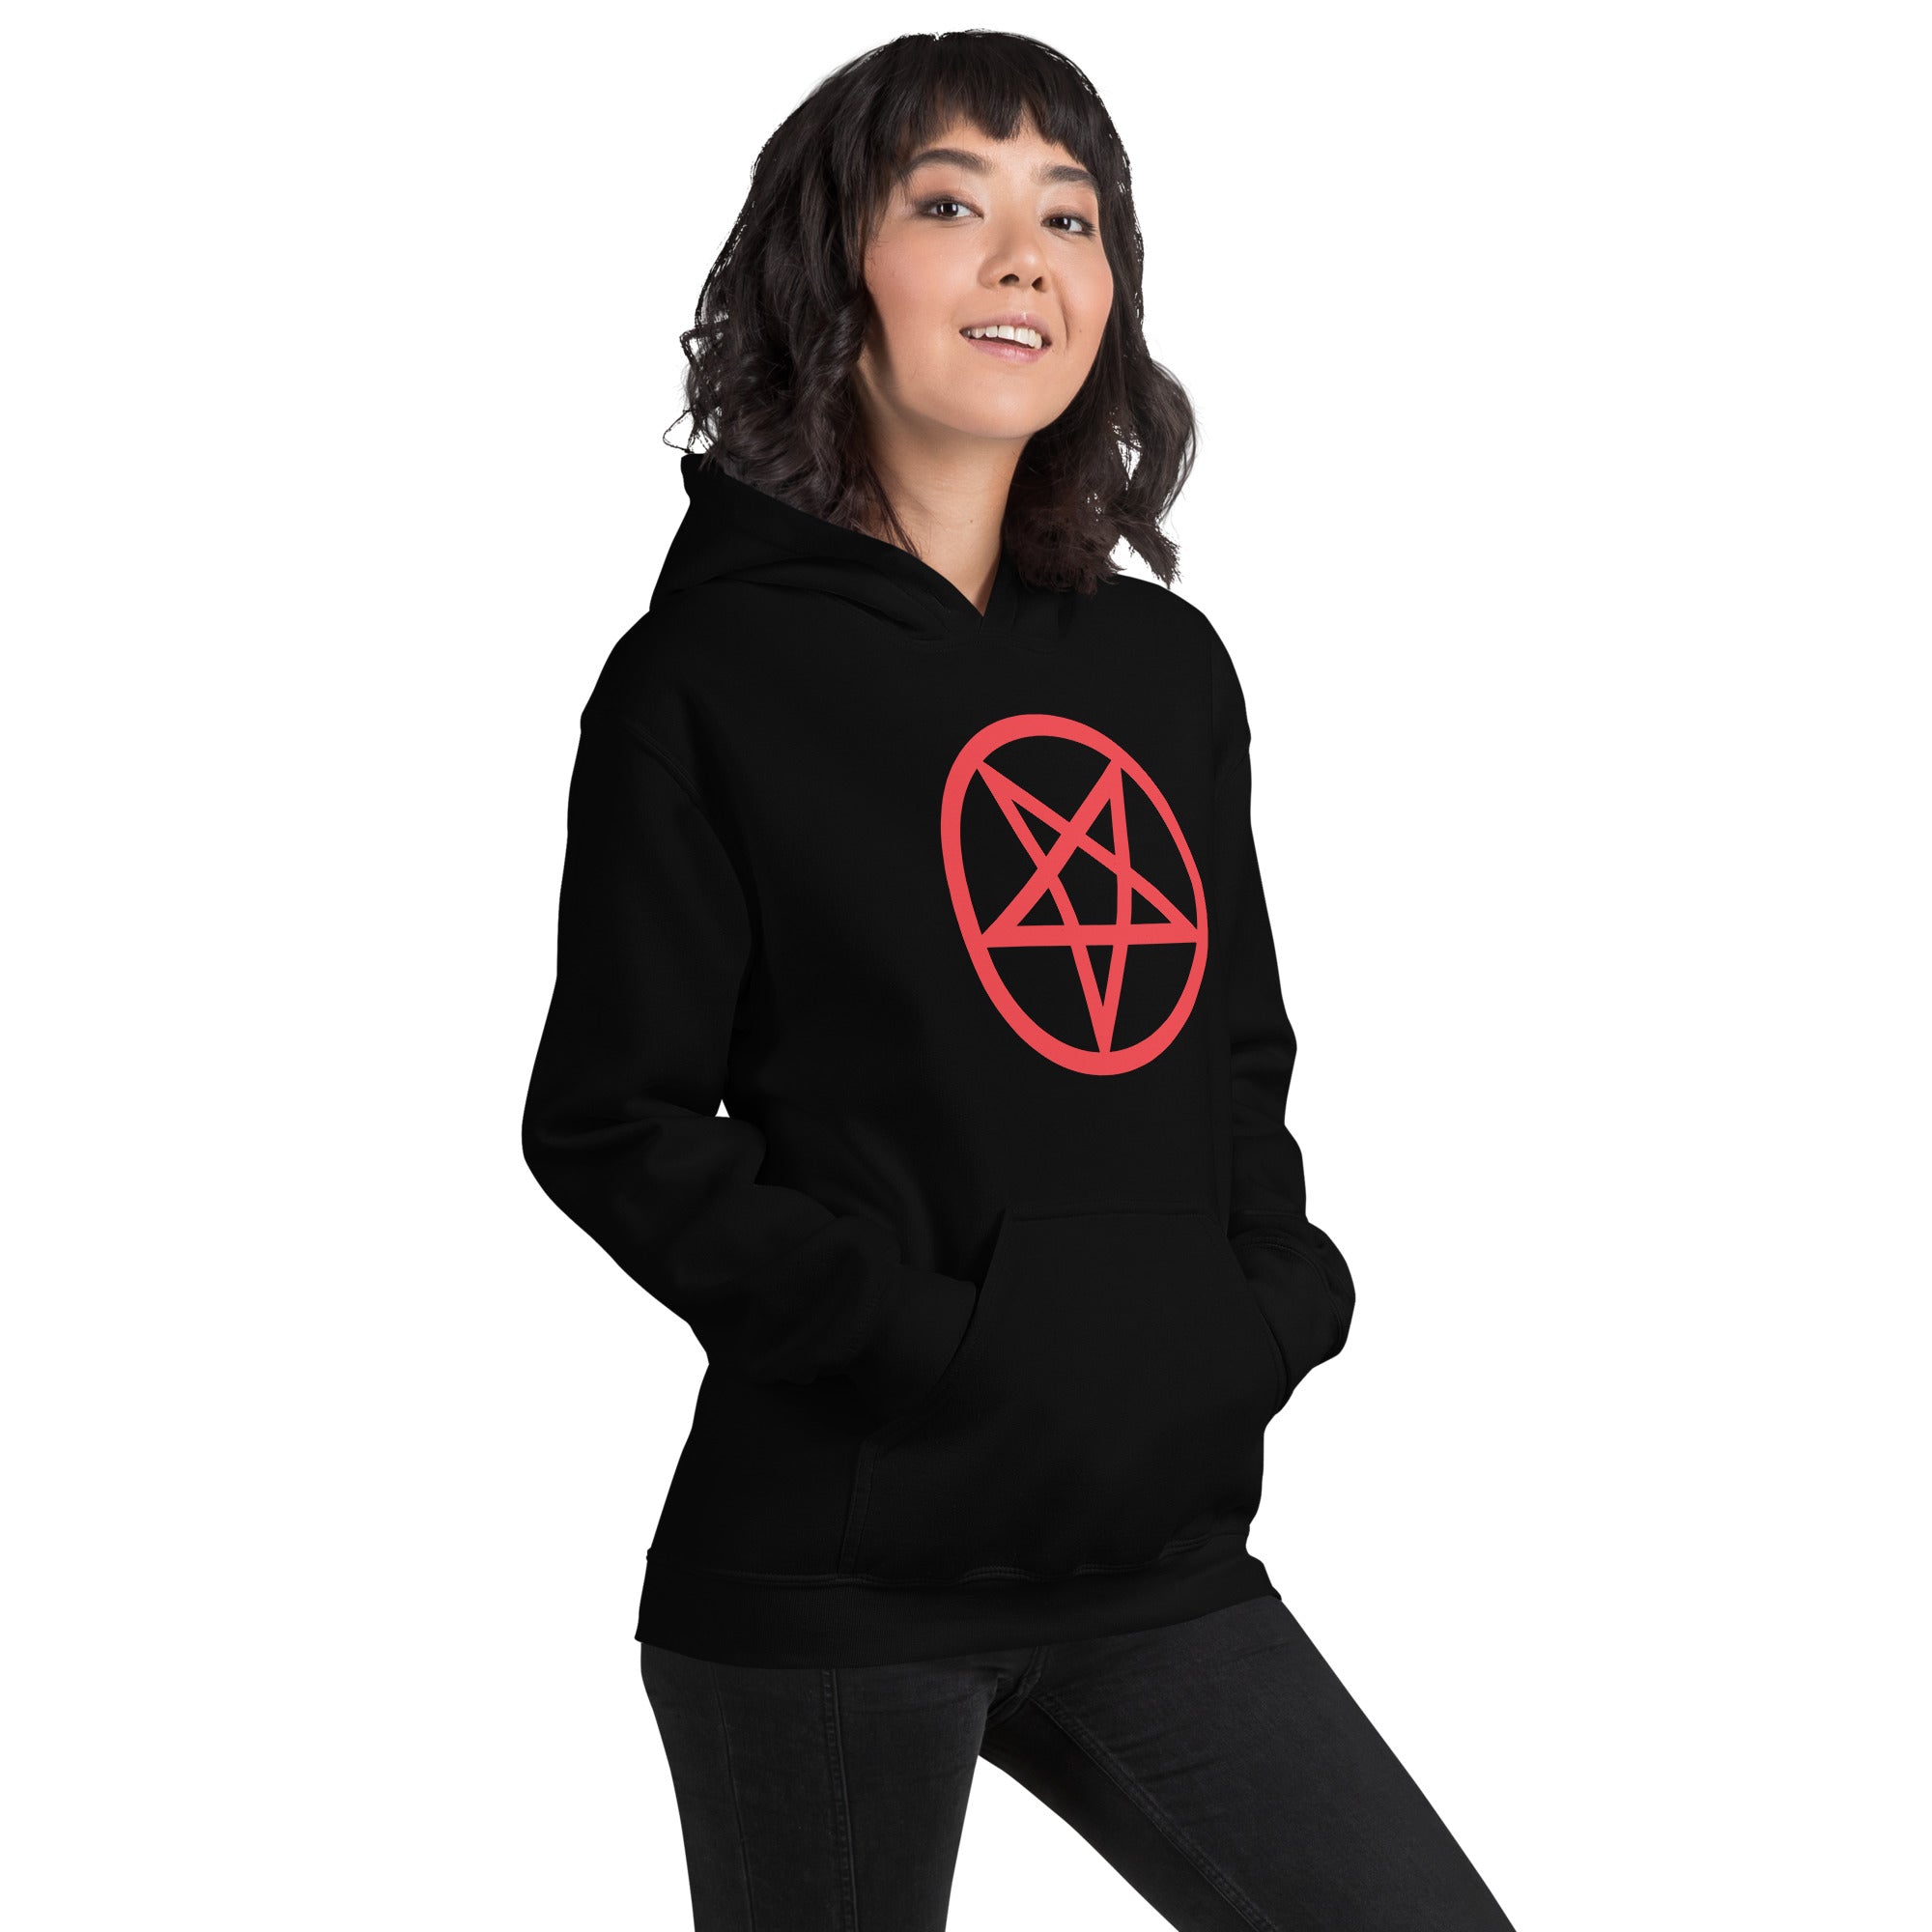 Red Classic Inverted Pentagram Occult Symbol Unisex Hoodie Sweatshirt - Edge of Life Designs